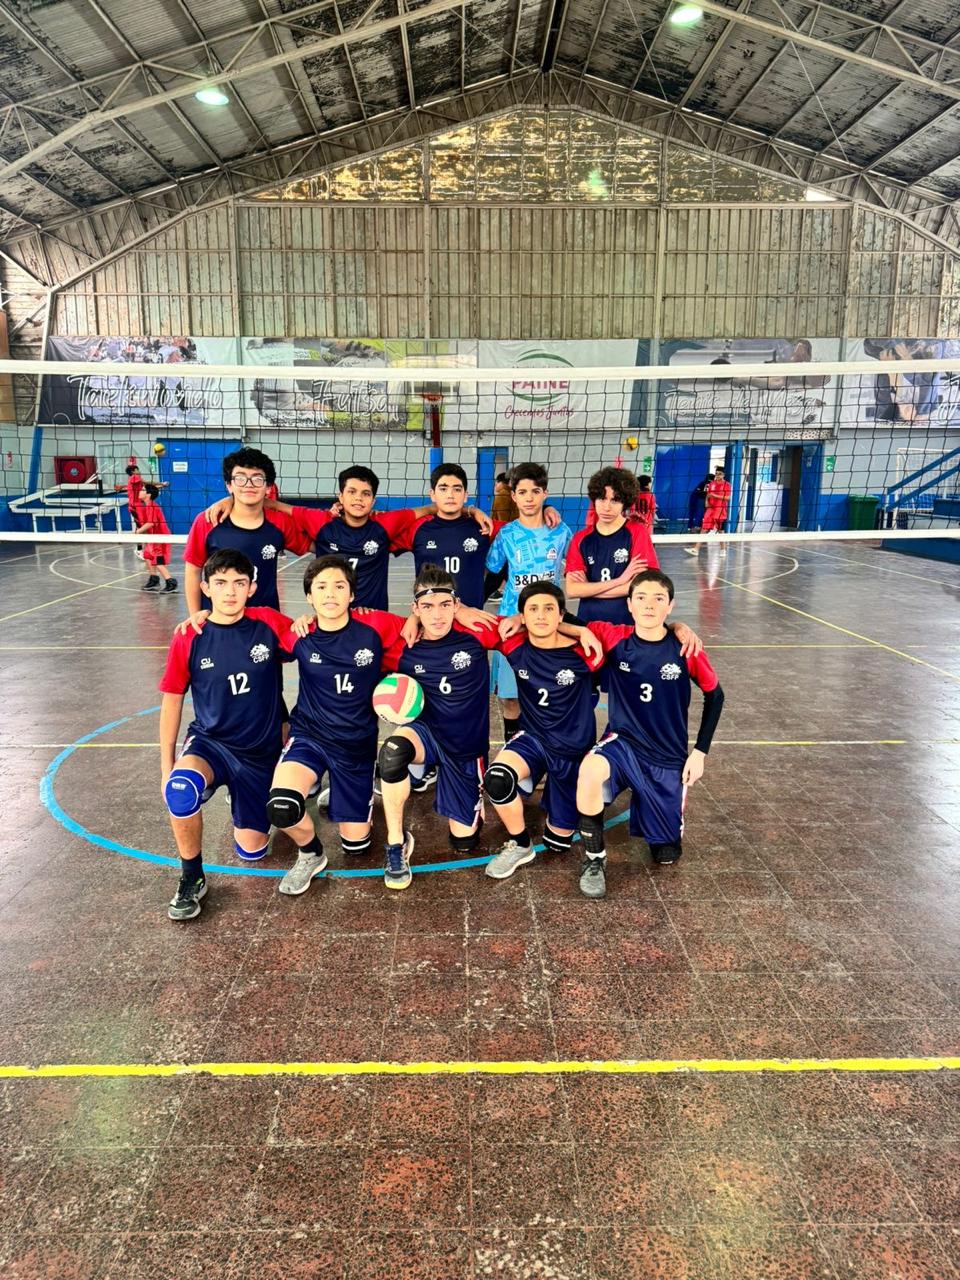 El equipo de voleibol masculino sub-14 del Colegio San Francisco de Paine se prepara para representar a Paine en los Juegos Deportivos Escolares.